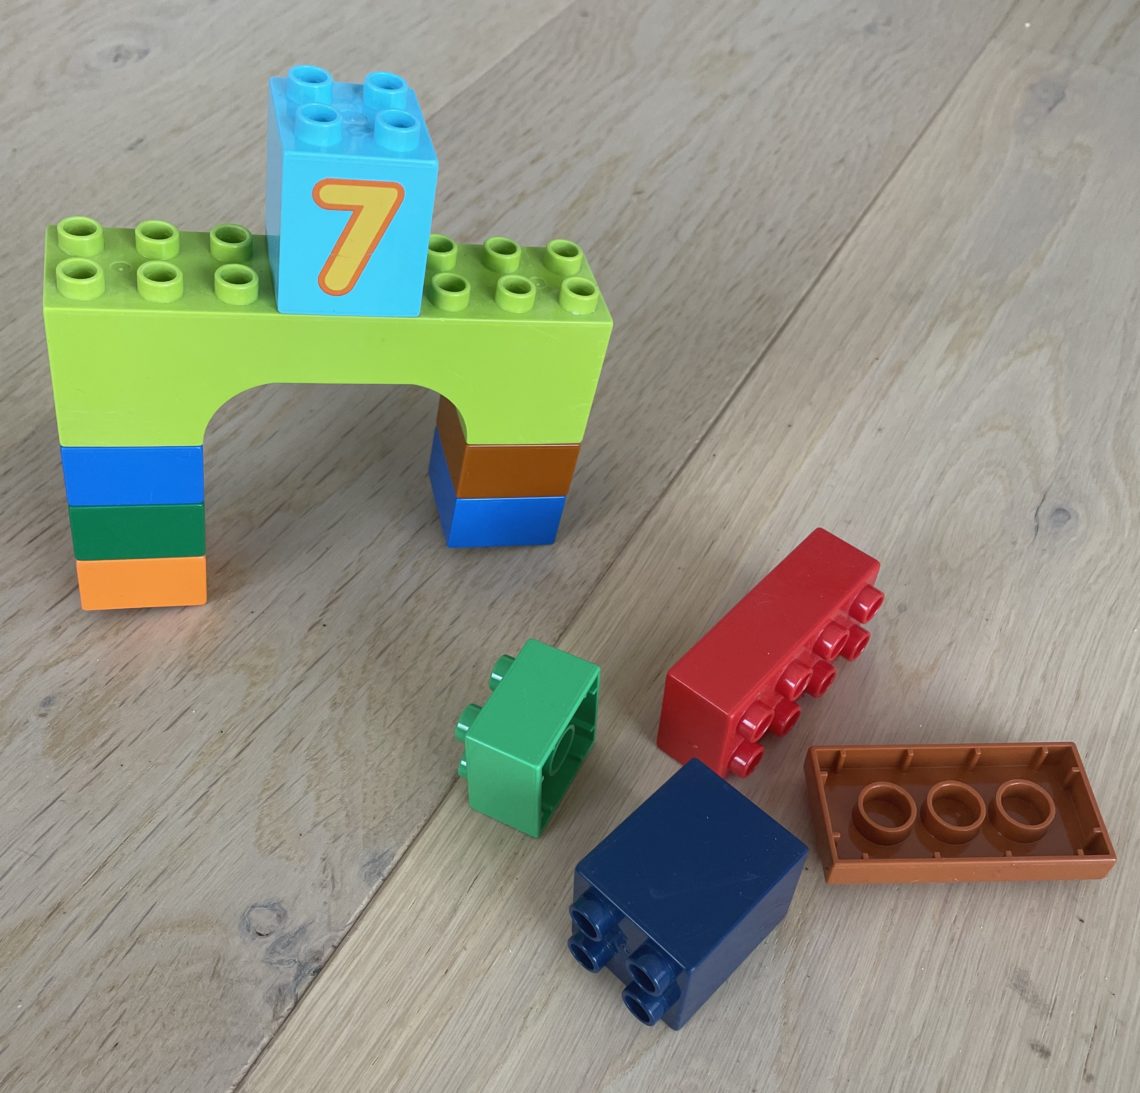 Lego problem-solving experiment